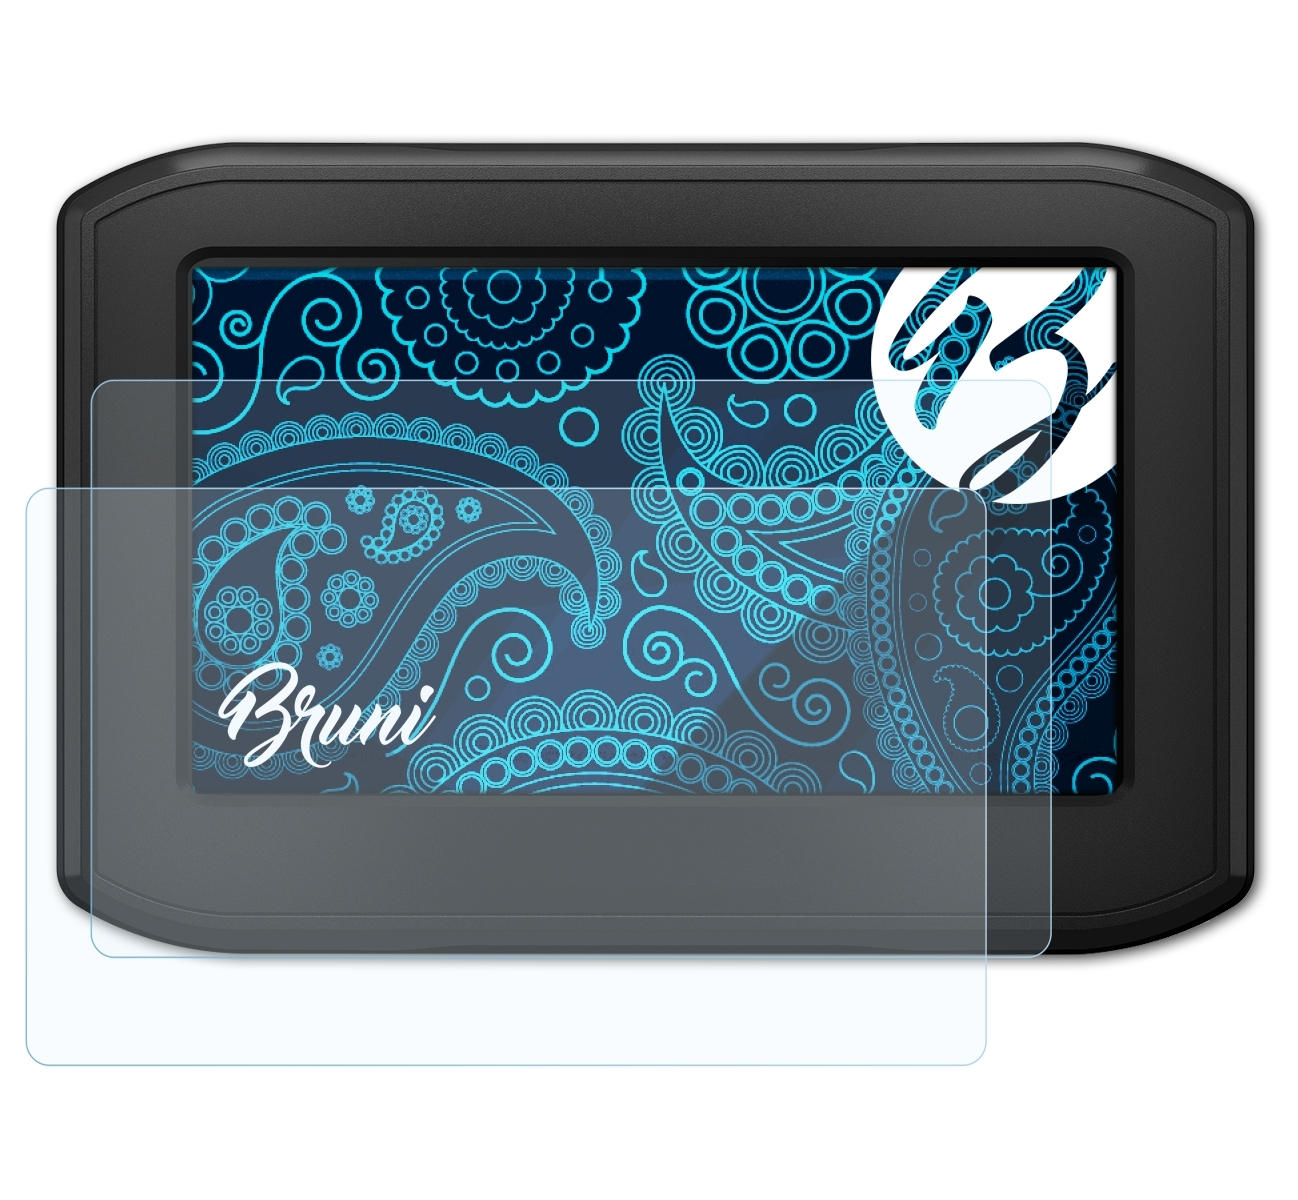 BRUNI 2x Basics-Clear Schutzfolie(für Garmin LMT-S) 396 Zumo